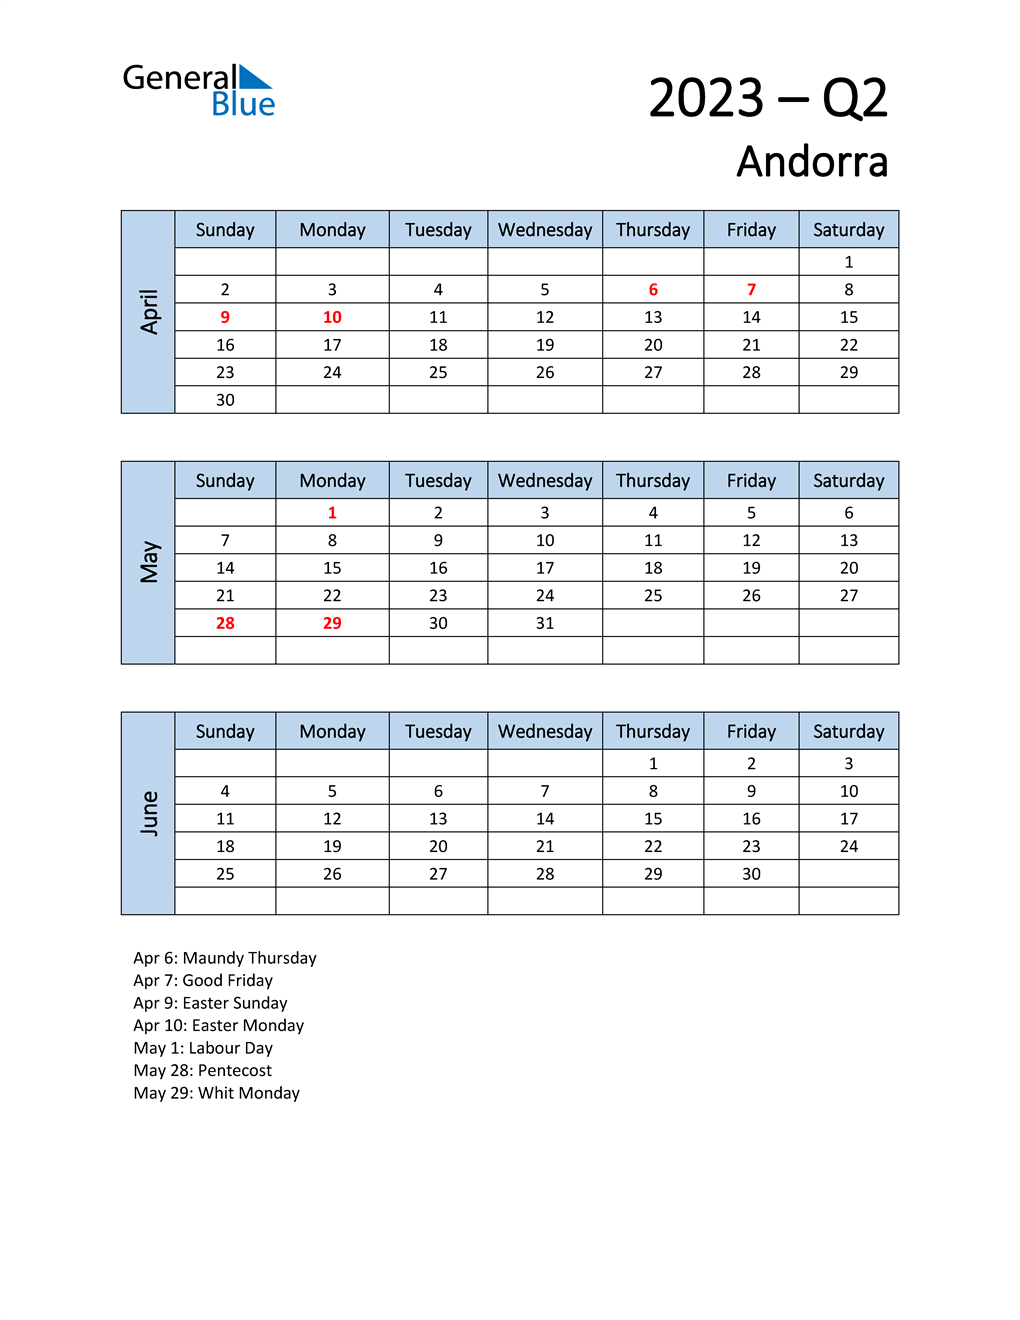  Free Q2 2023 Calendar for Andorra